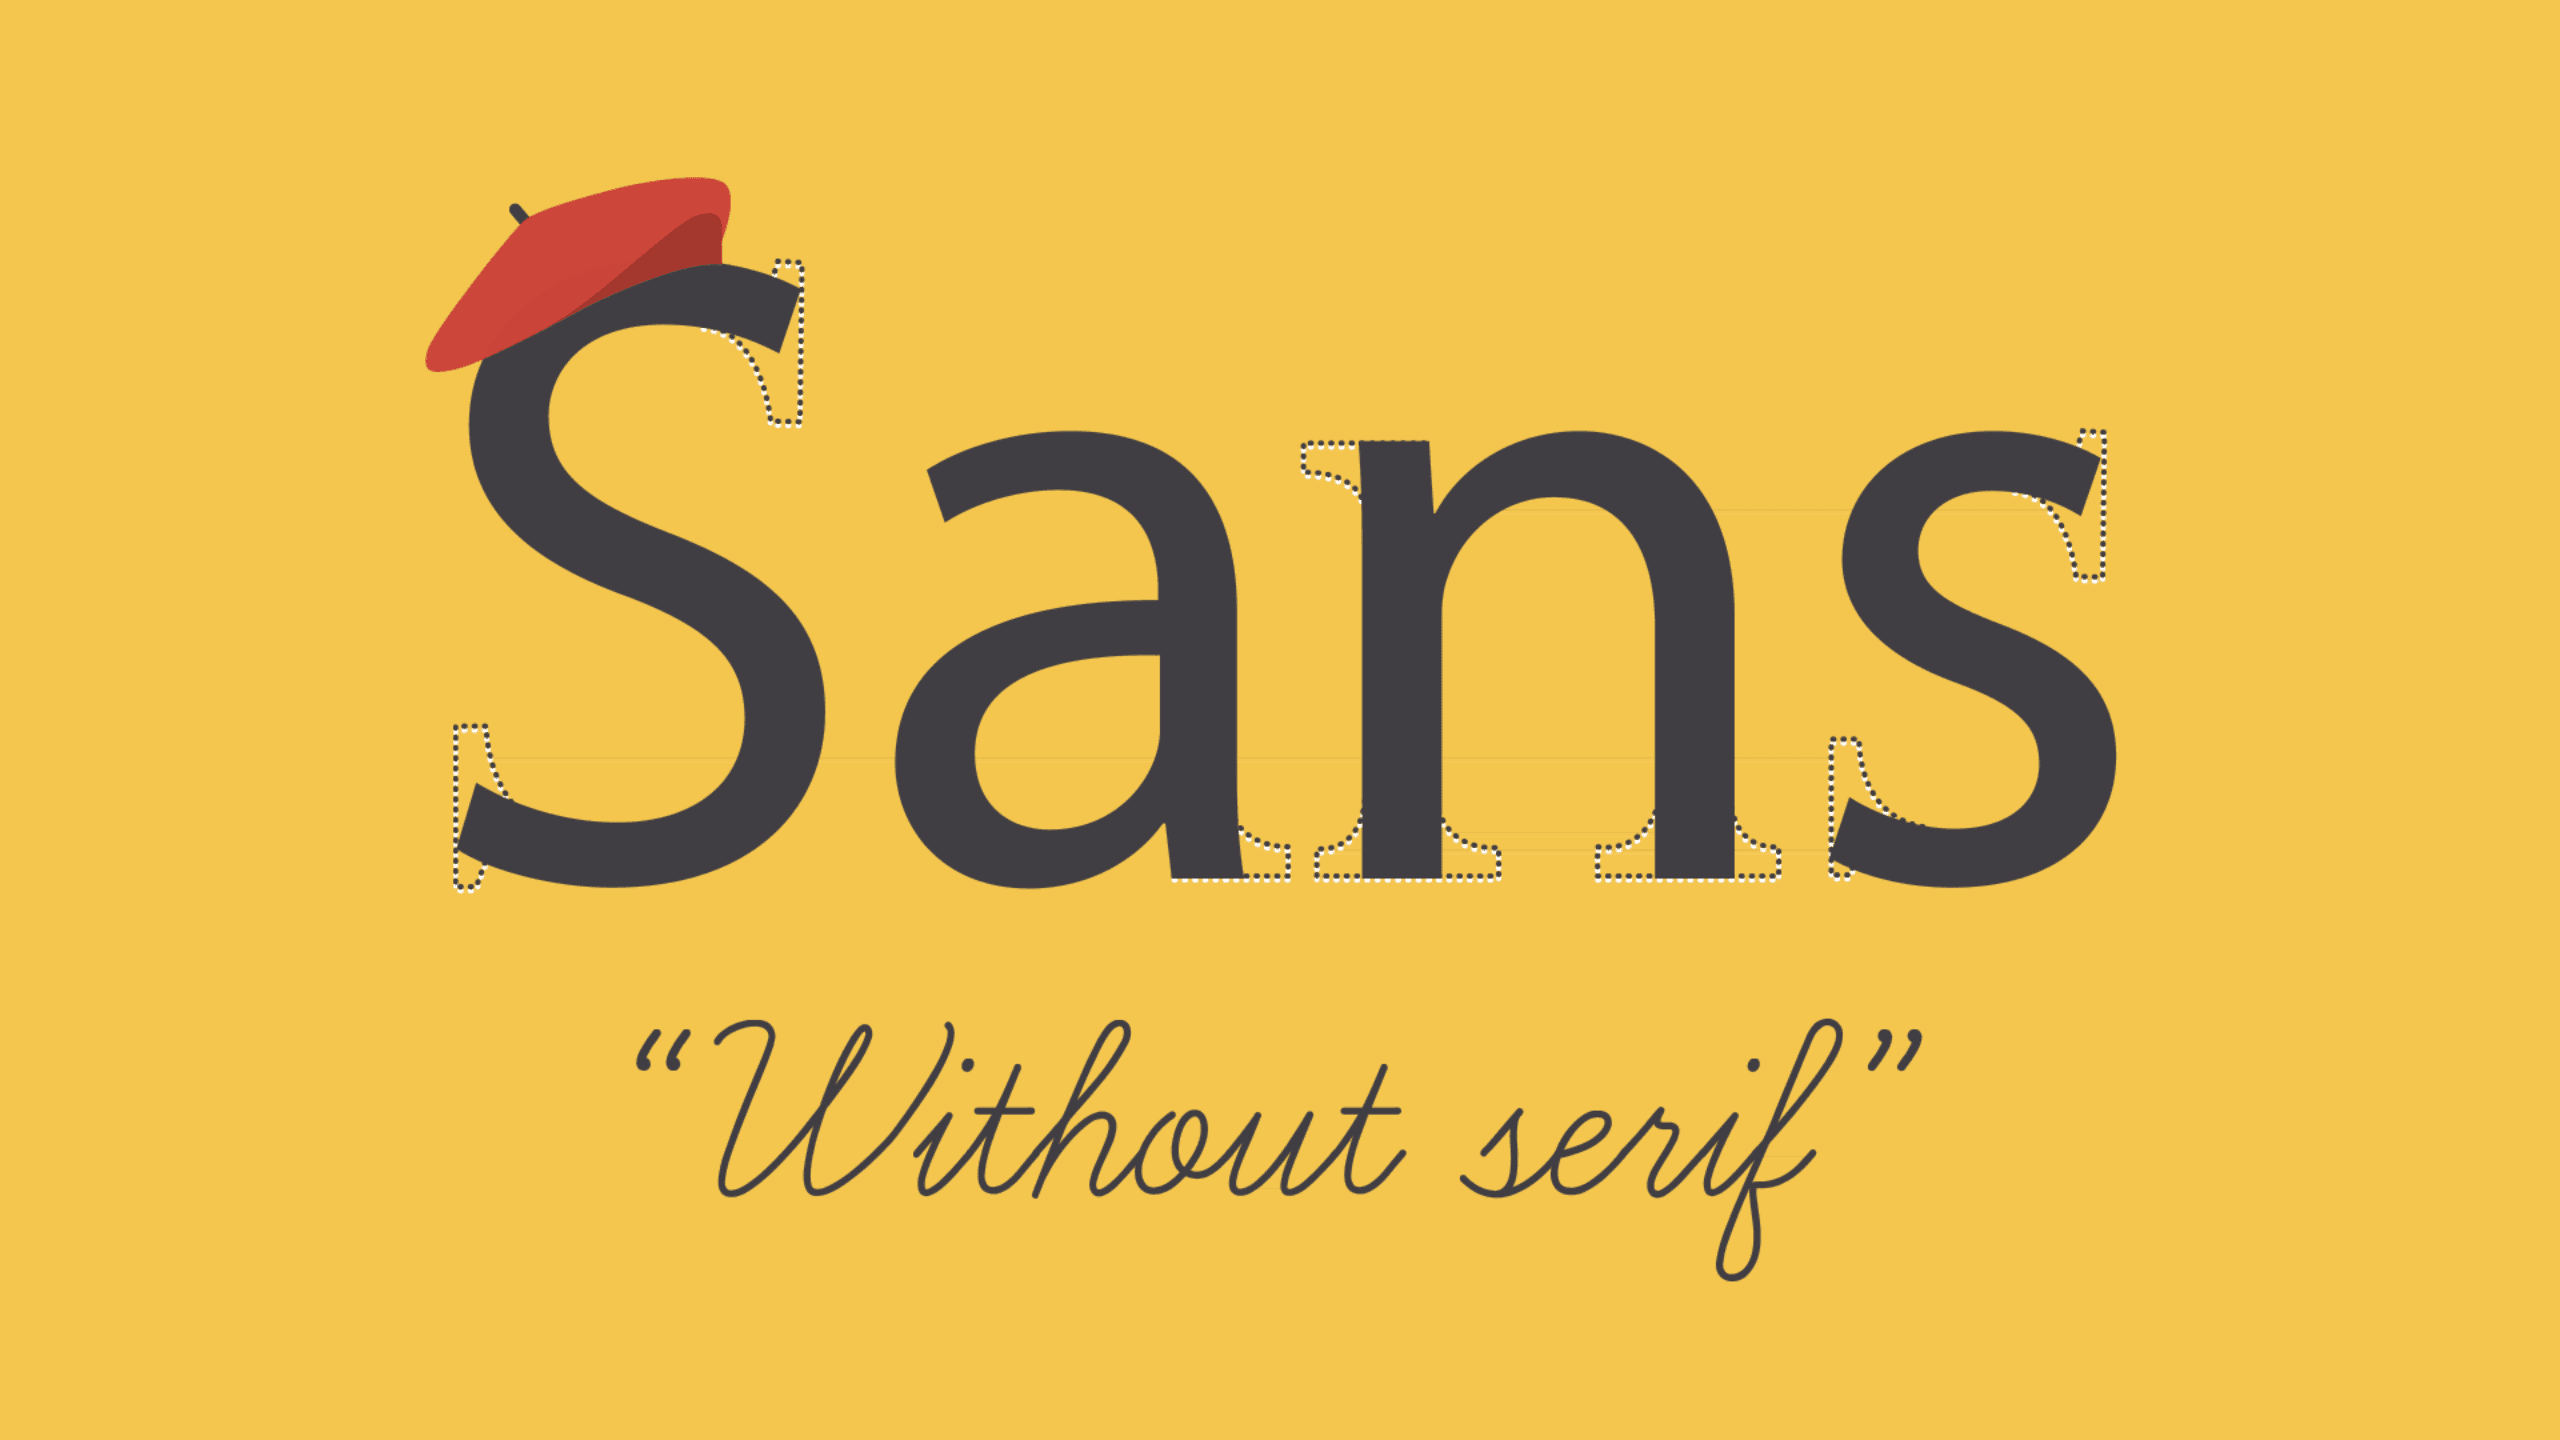 الخطوط Serif وSans serif - الخطوط Serif وSans serif